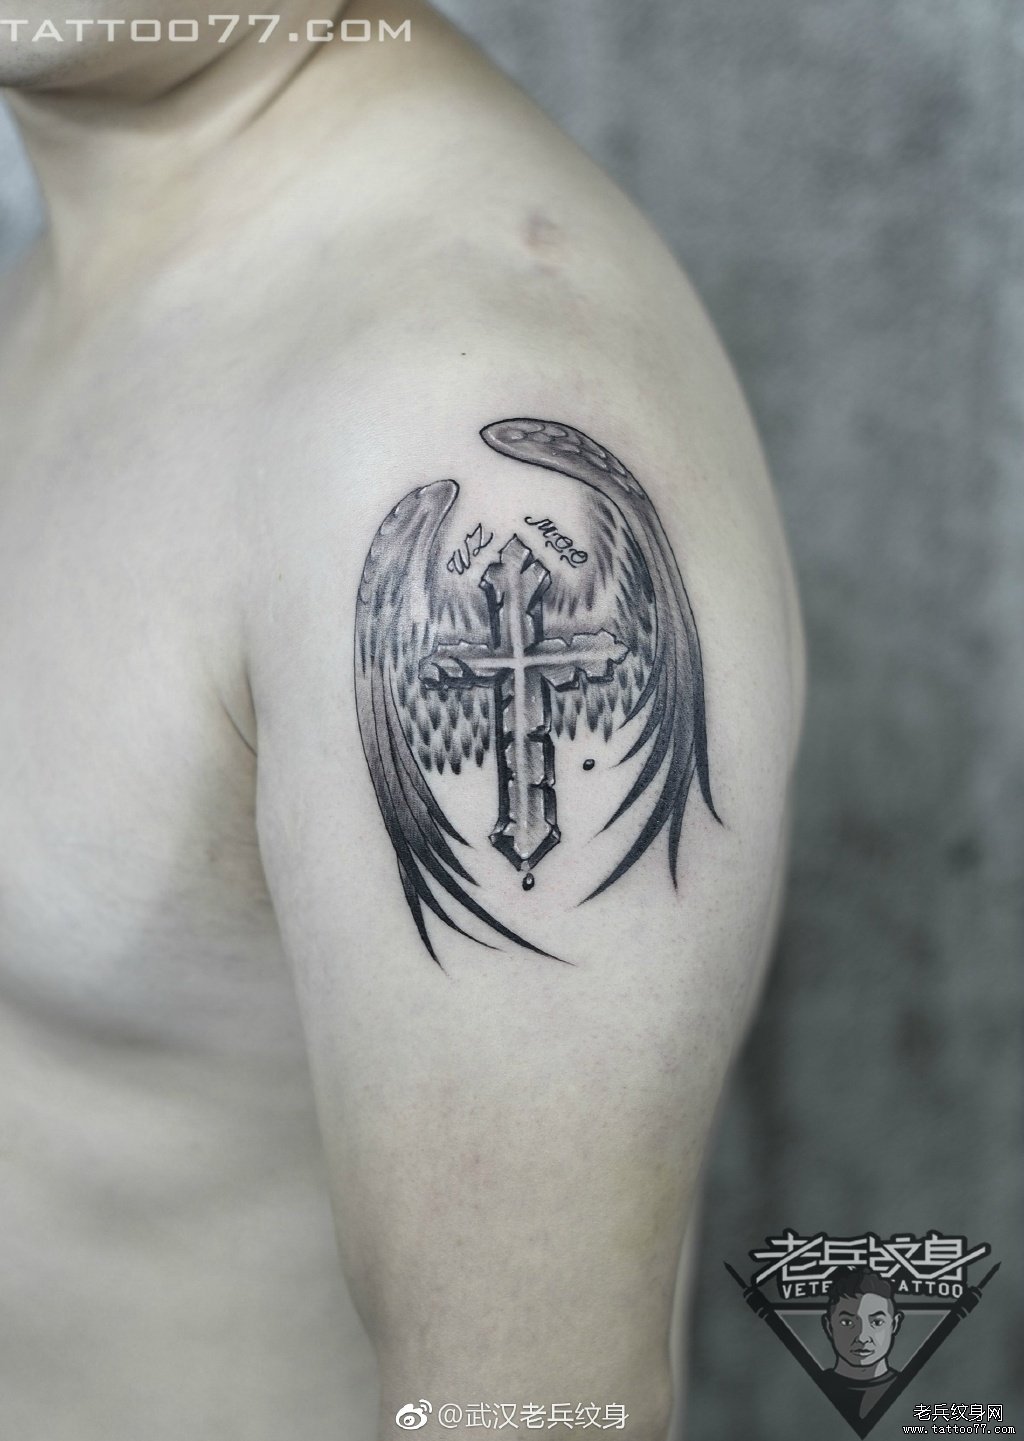 大臂十字架天使翅膀纹身图案作品